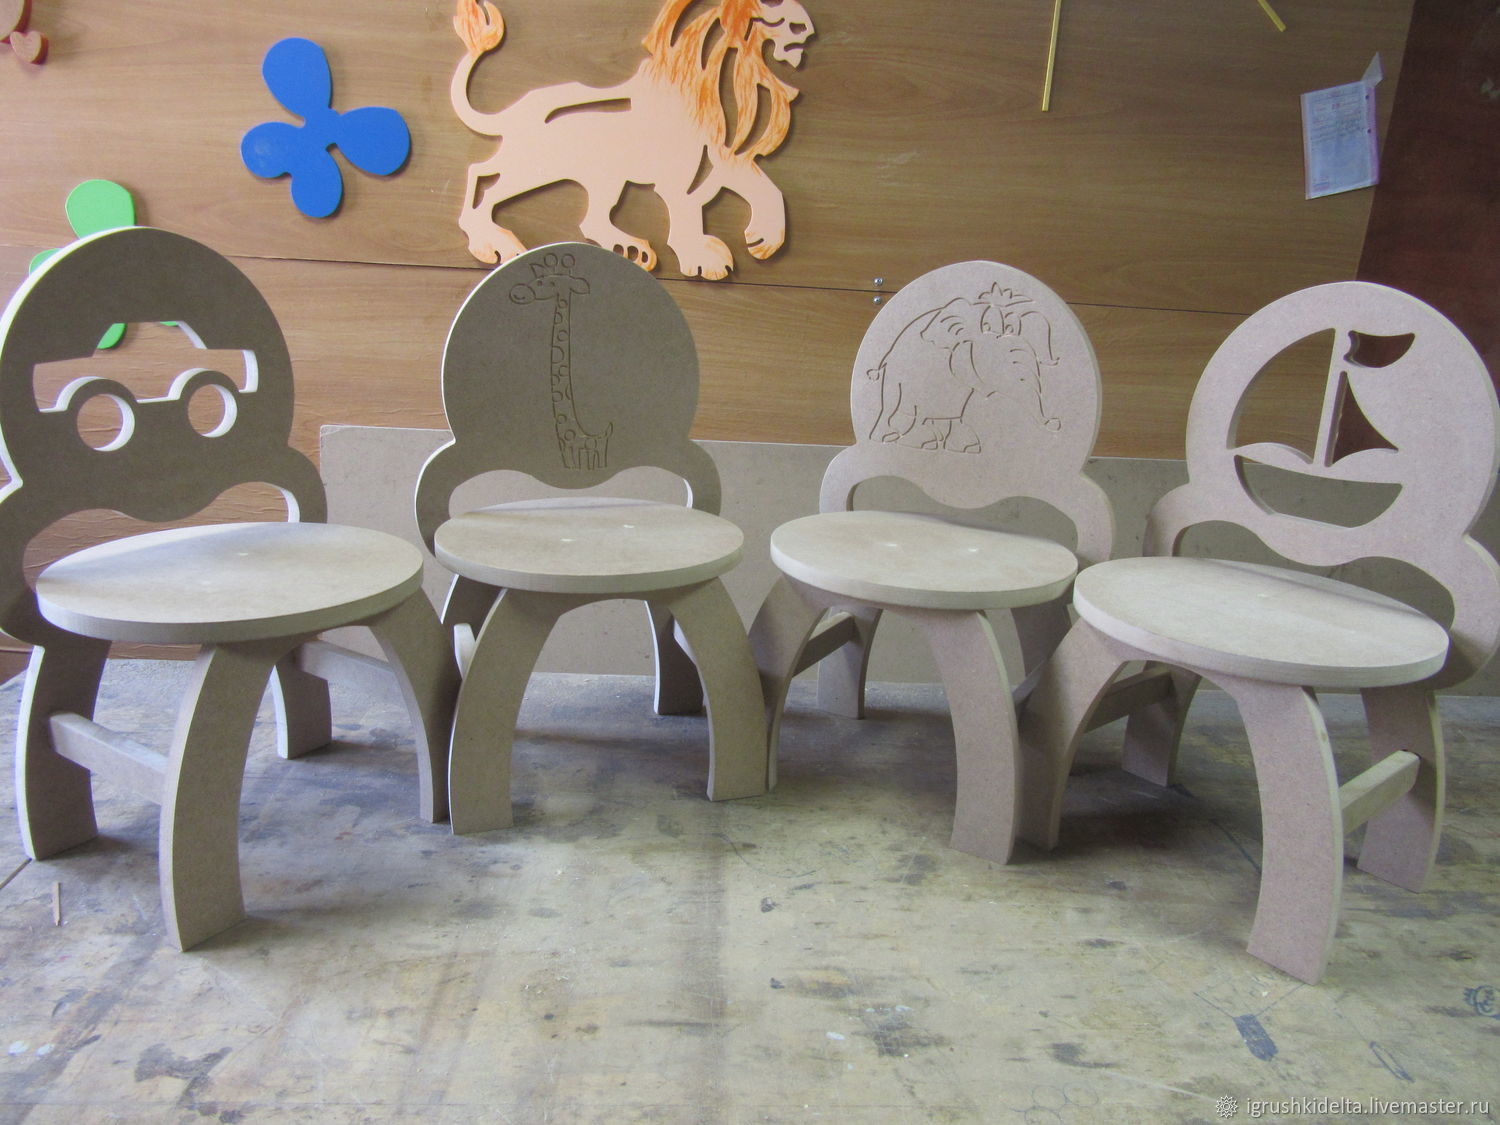 Образный комфорт: тематические стулья, вдохновляющие израильских детей на ролевые игры и сказочные приключения